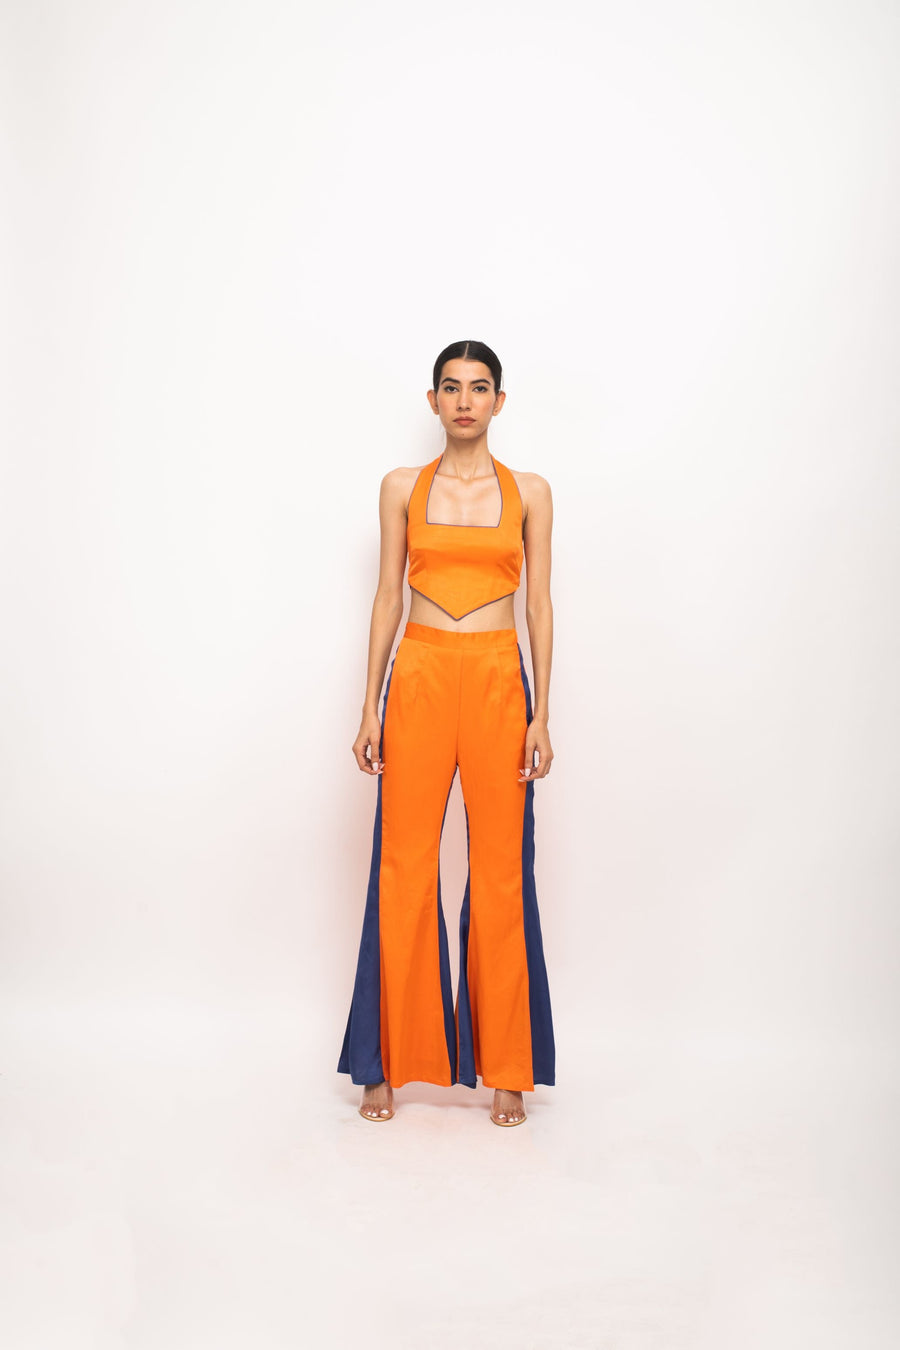 A Model Wearing Orange Bemberg Orange-Blue Halter Neck Set, curated by Only Ethikal